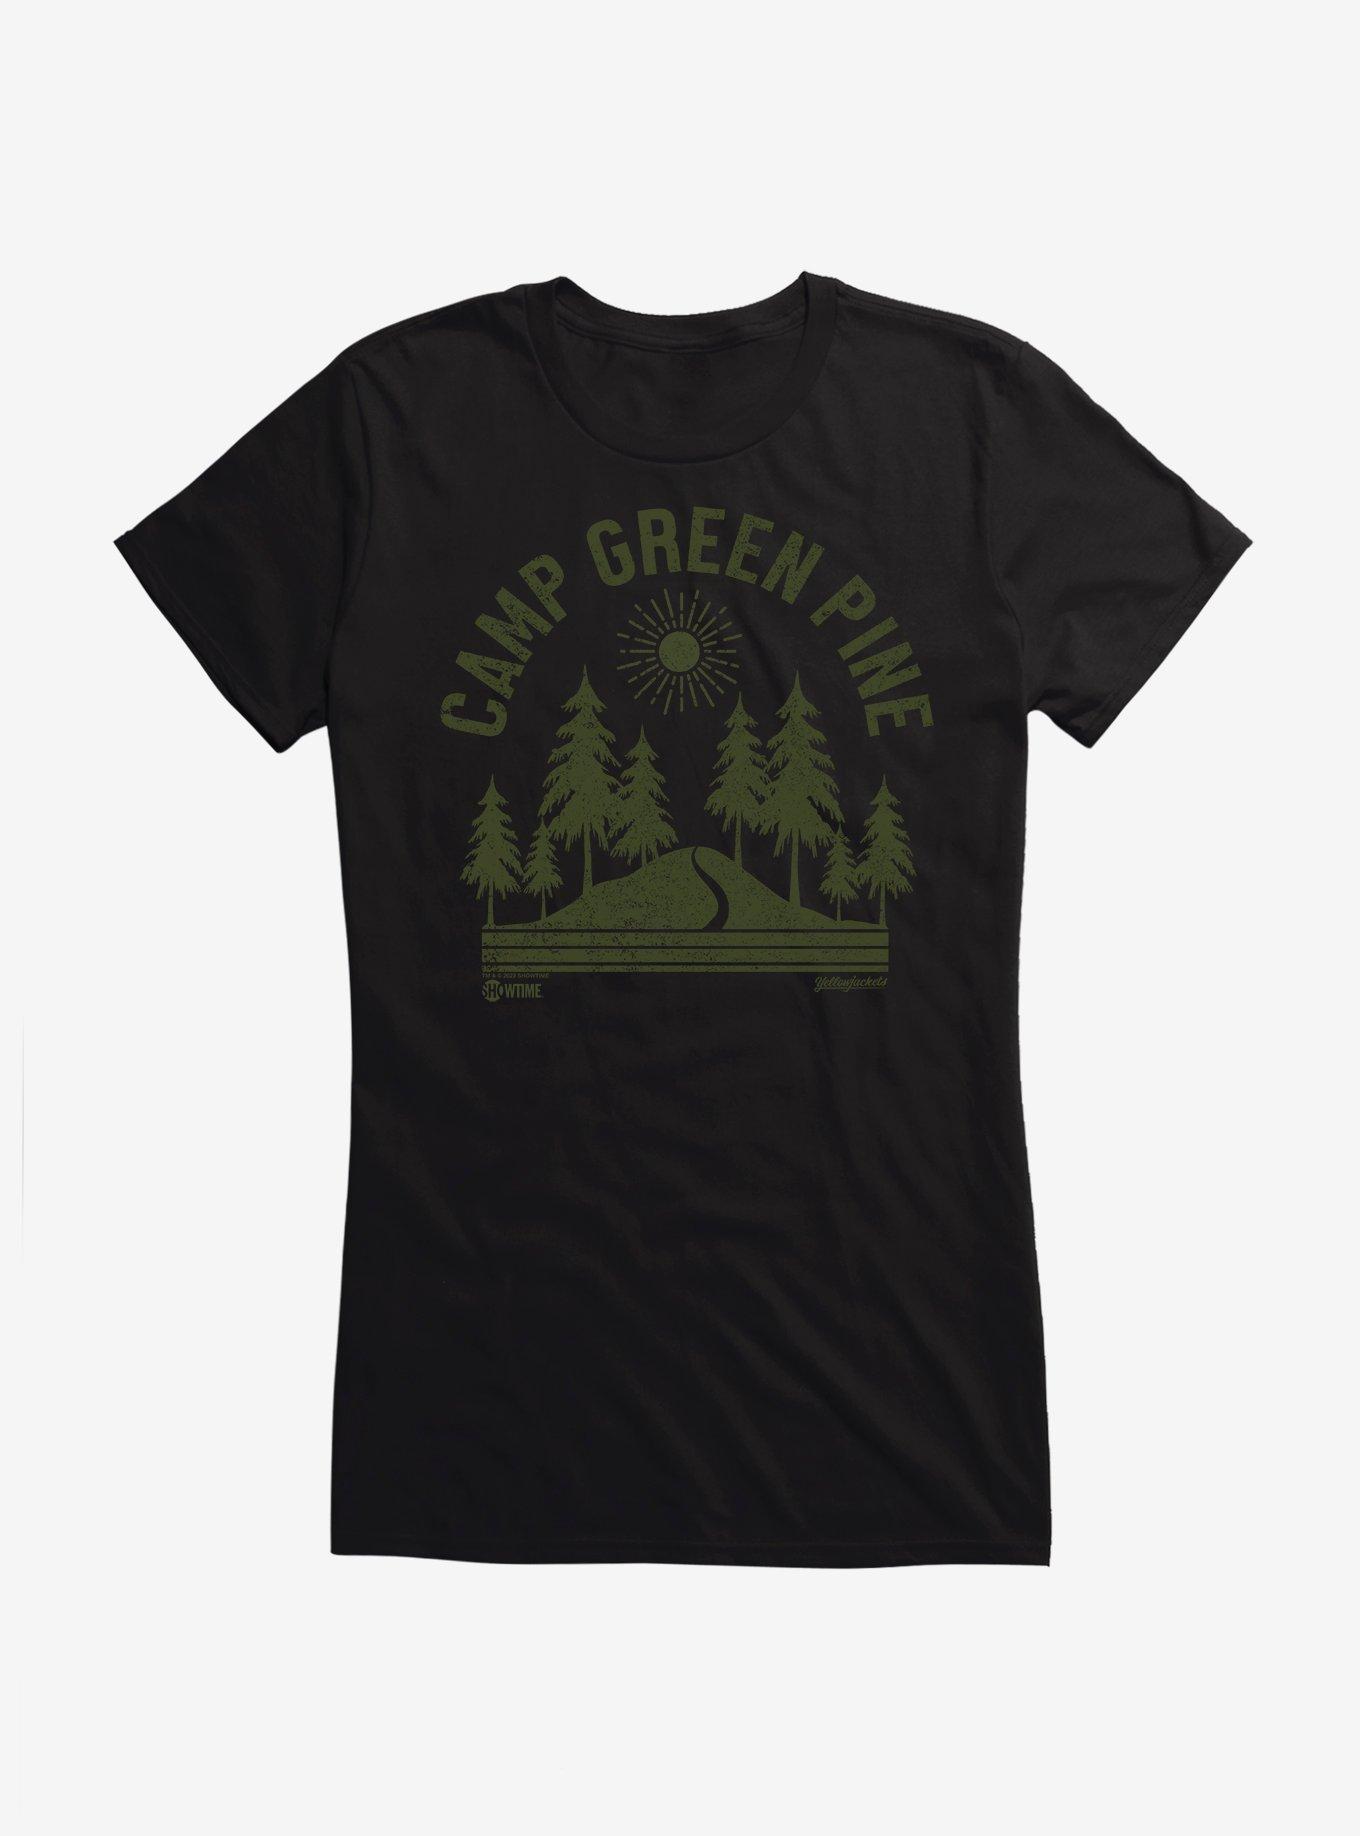 Yellowjackets Camp Green Pine Girls T-Shirt